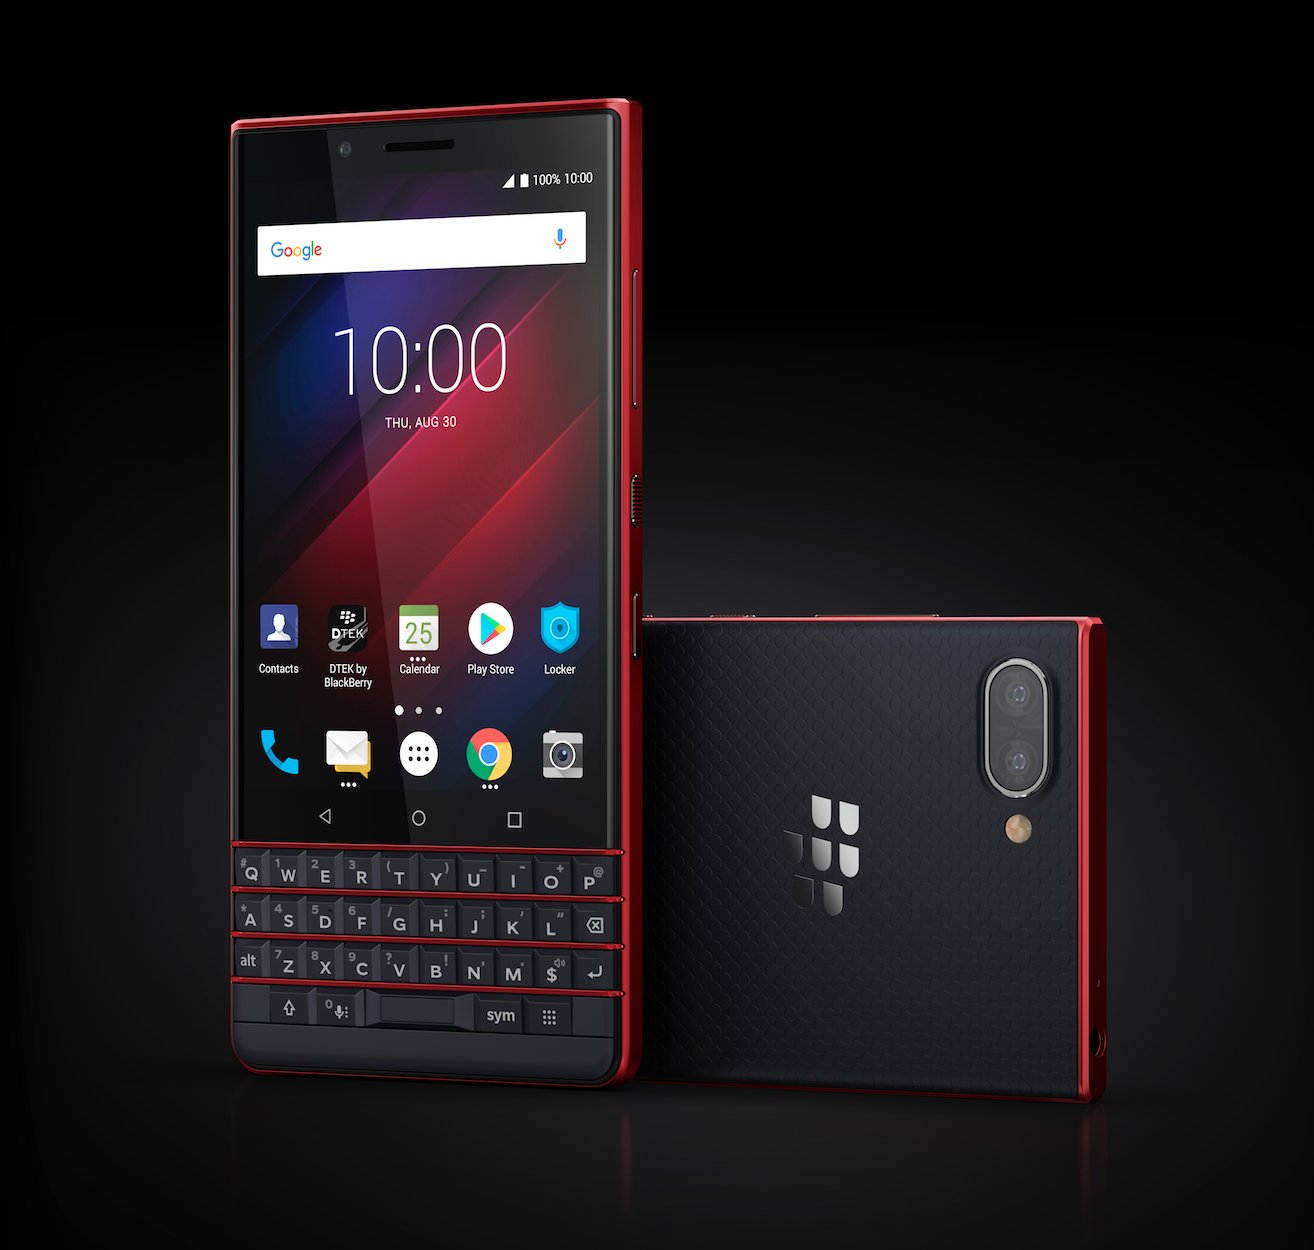 BlackBerry confirma evento para el 30 de agosto en IFA 2018